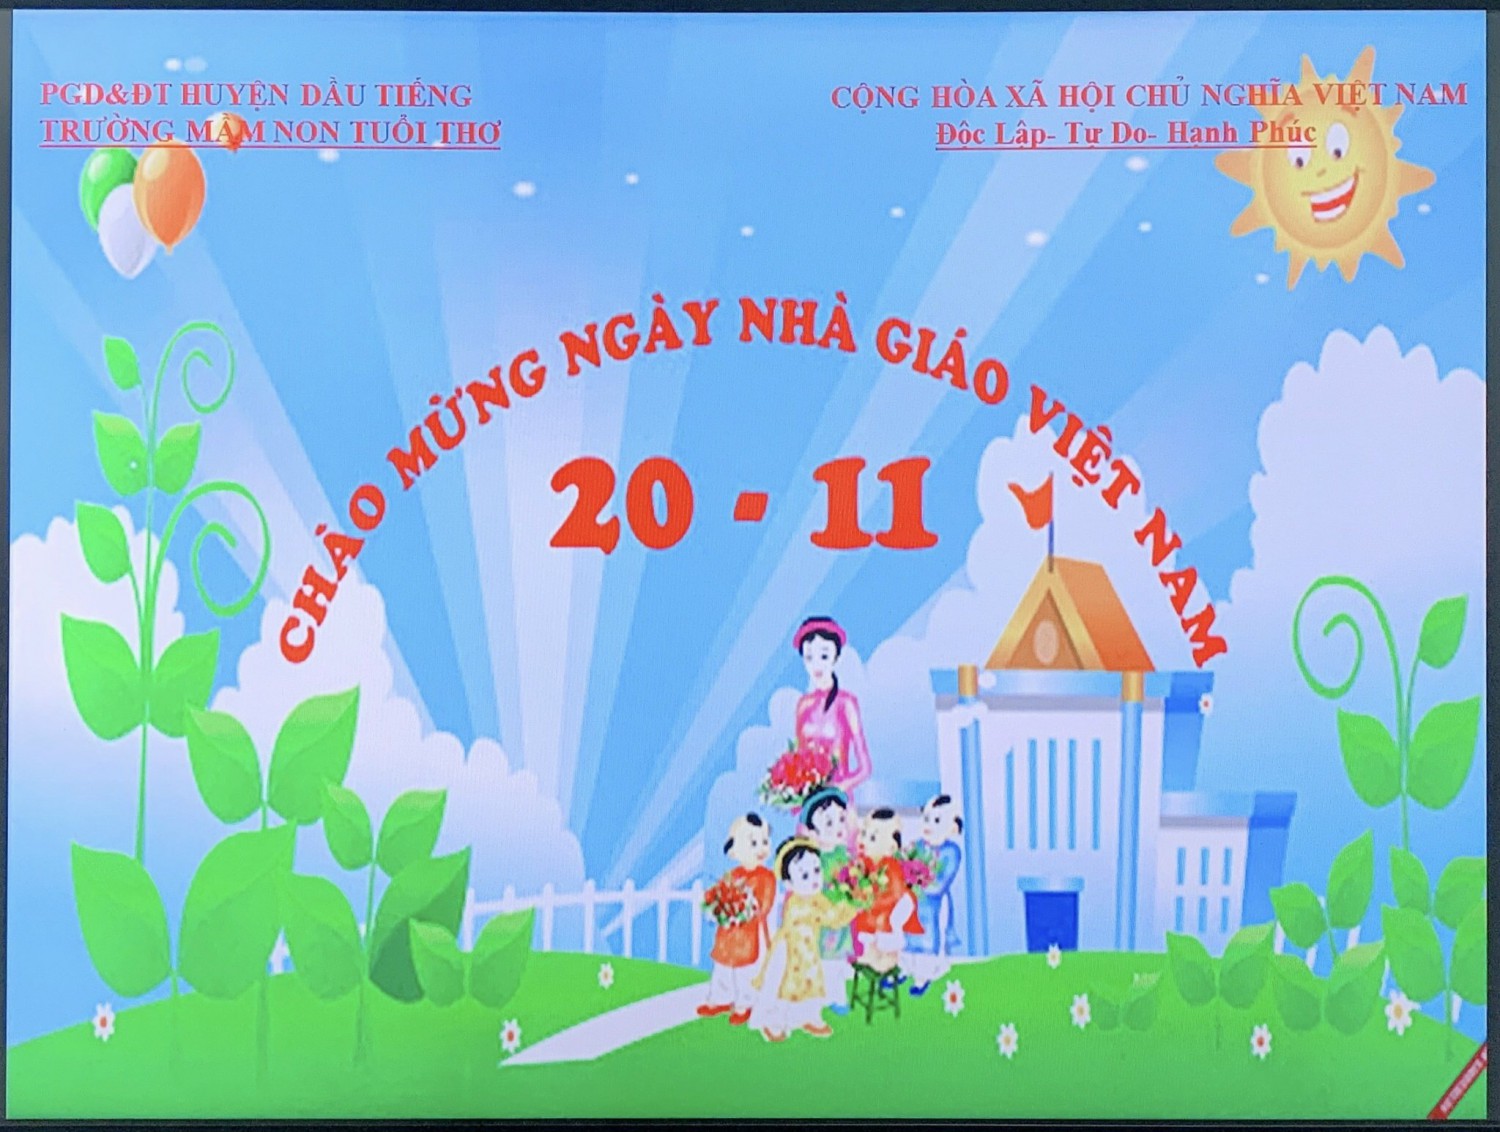 Ngày Nhà giáo Việt Nam 20/11: Chúc mừng ngày Nhà giáo Việt Nam 20/11 với các bức tranh vô cùng ý nghĩa dành tặng các thầy cô giáo. Hãy cùng nhau tôn vinh công lao và sự kiên trì của những người thầy giáo đã truyền cảm hứng, tri thức và giá trị nhân văn cho các em học sinh. Hãy cùng xem các bức tranh thật đẹp và ấn tượng! 